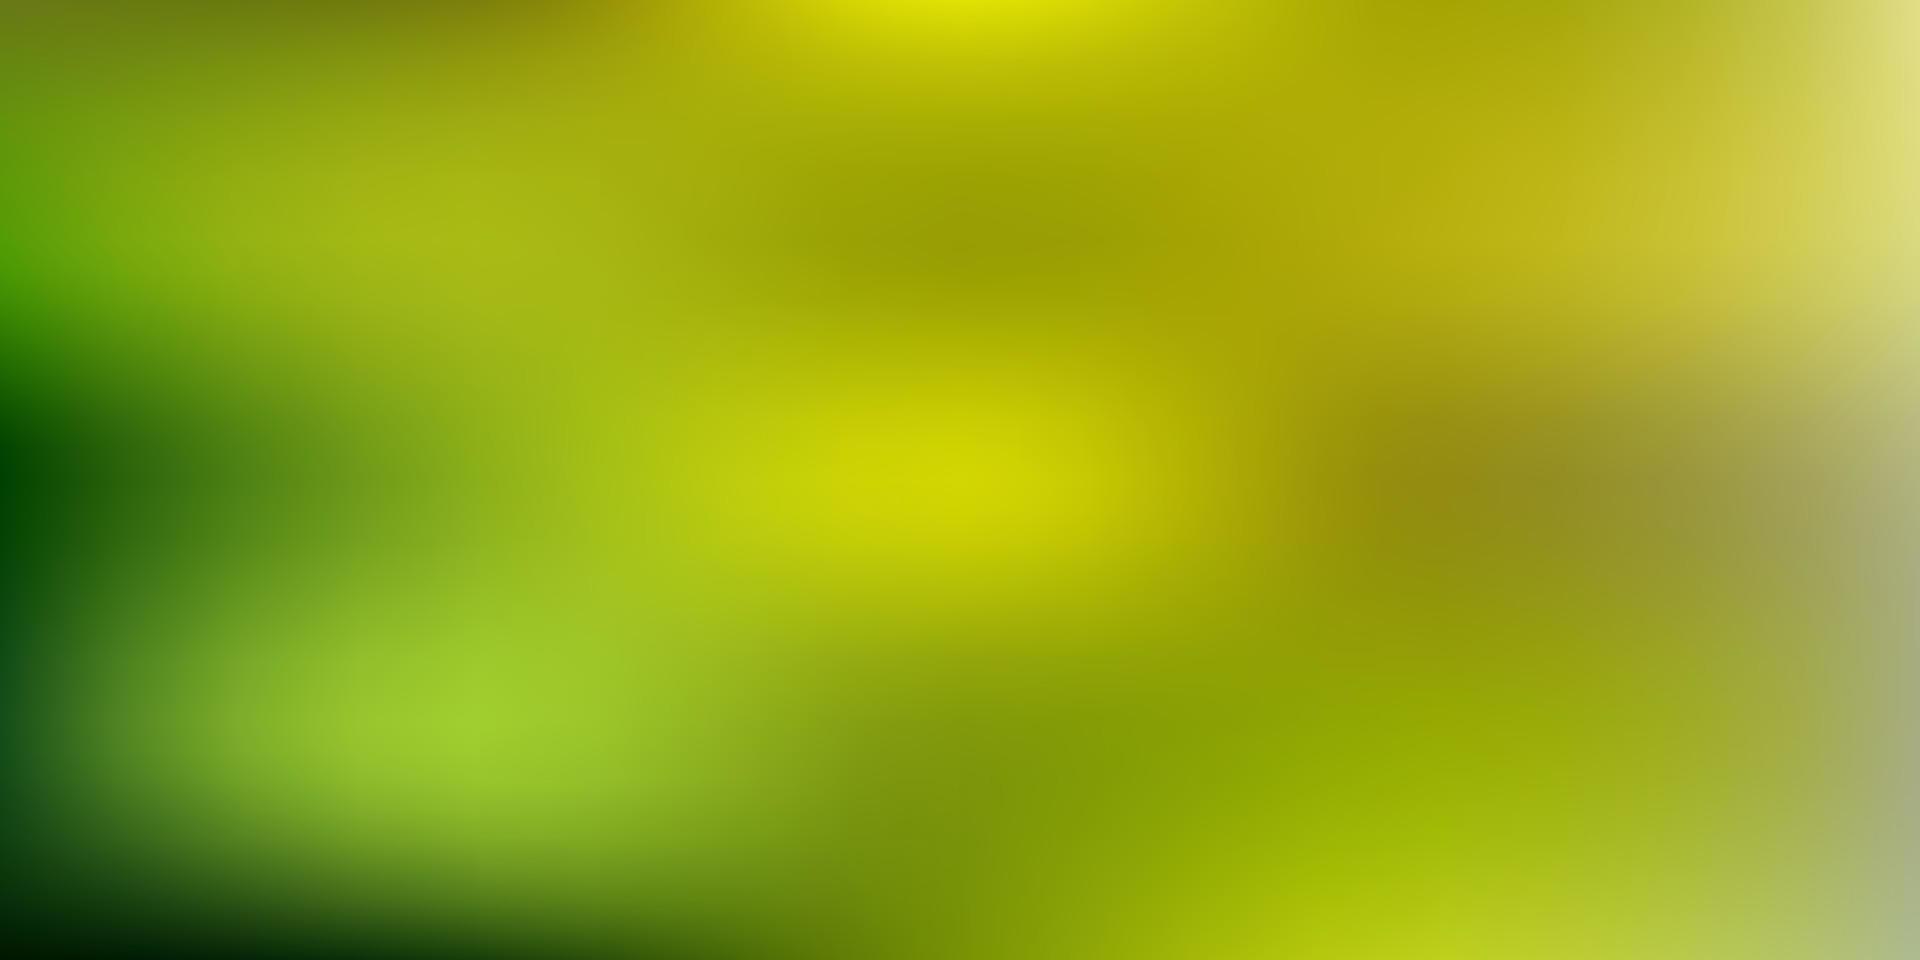 patrón de desenfoque degradado vector verde claro, amarillo.